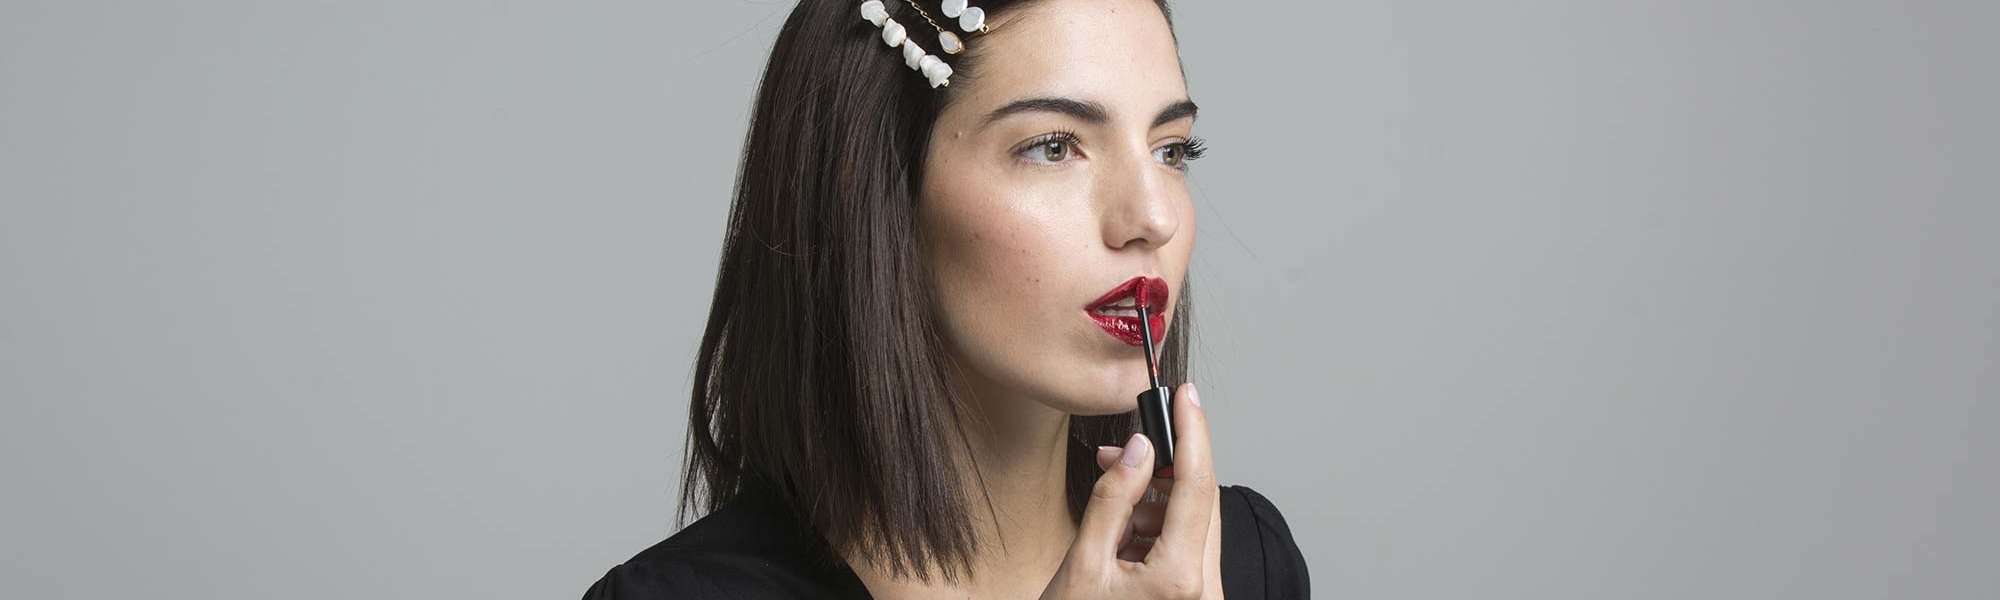 Te contamos todos los trucos para que sepas cómo pintarte los labios a la perfección con los pintalabios de larga duración de L’Oréal Paris. 